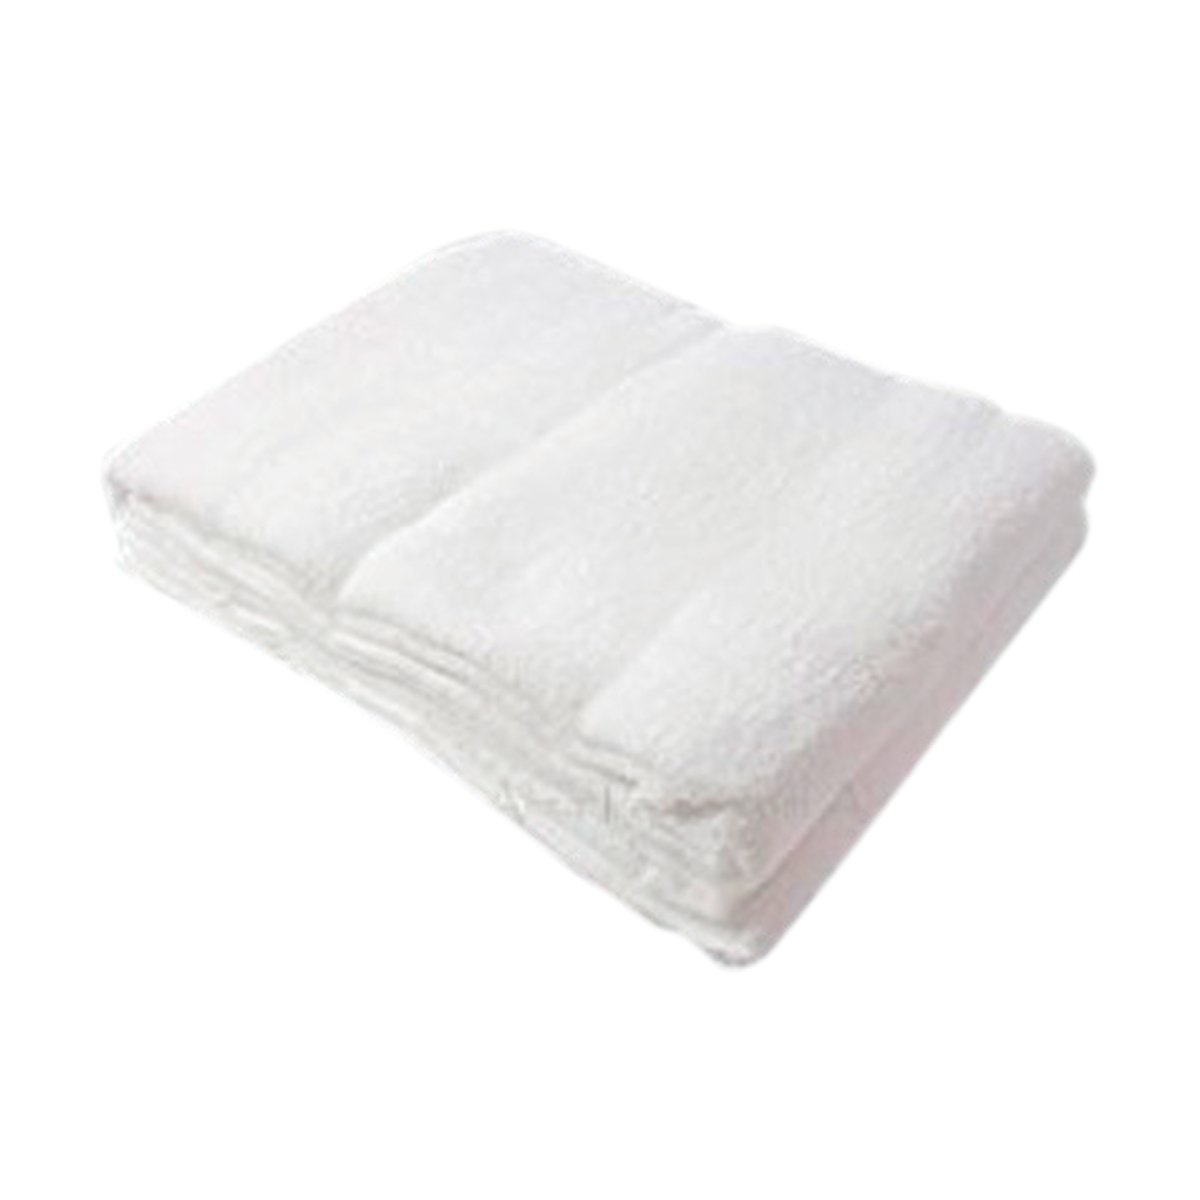 Barbarella Haj Towel Micro Cotton 108x217cm